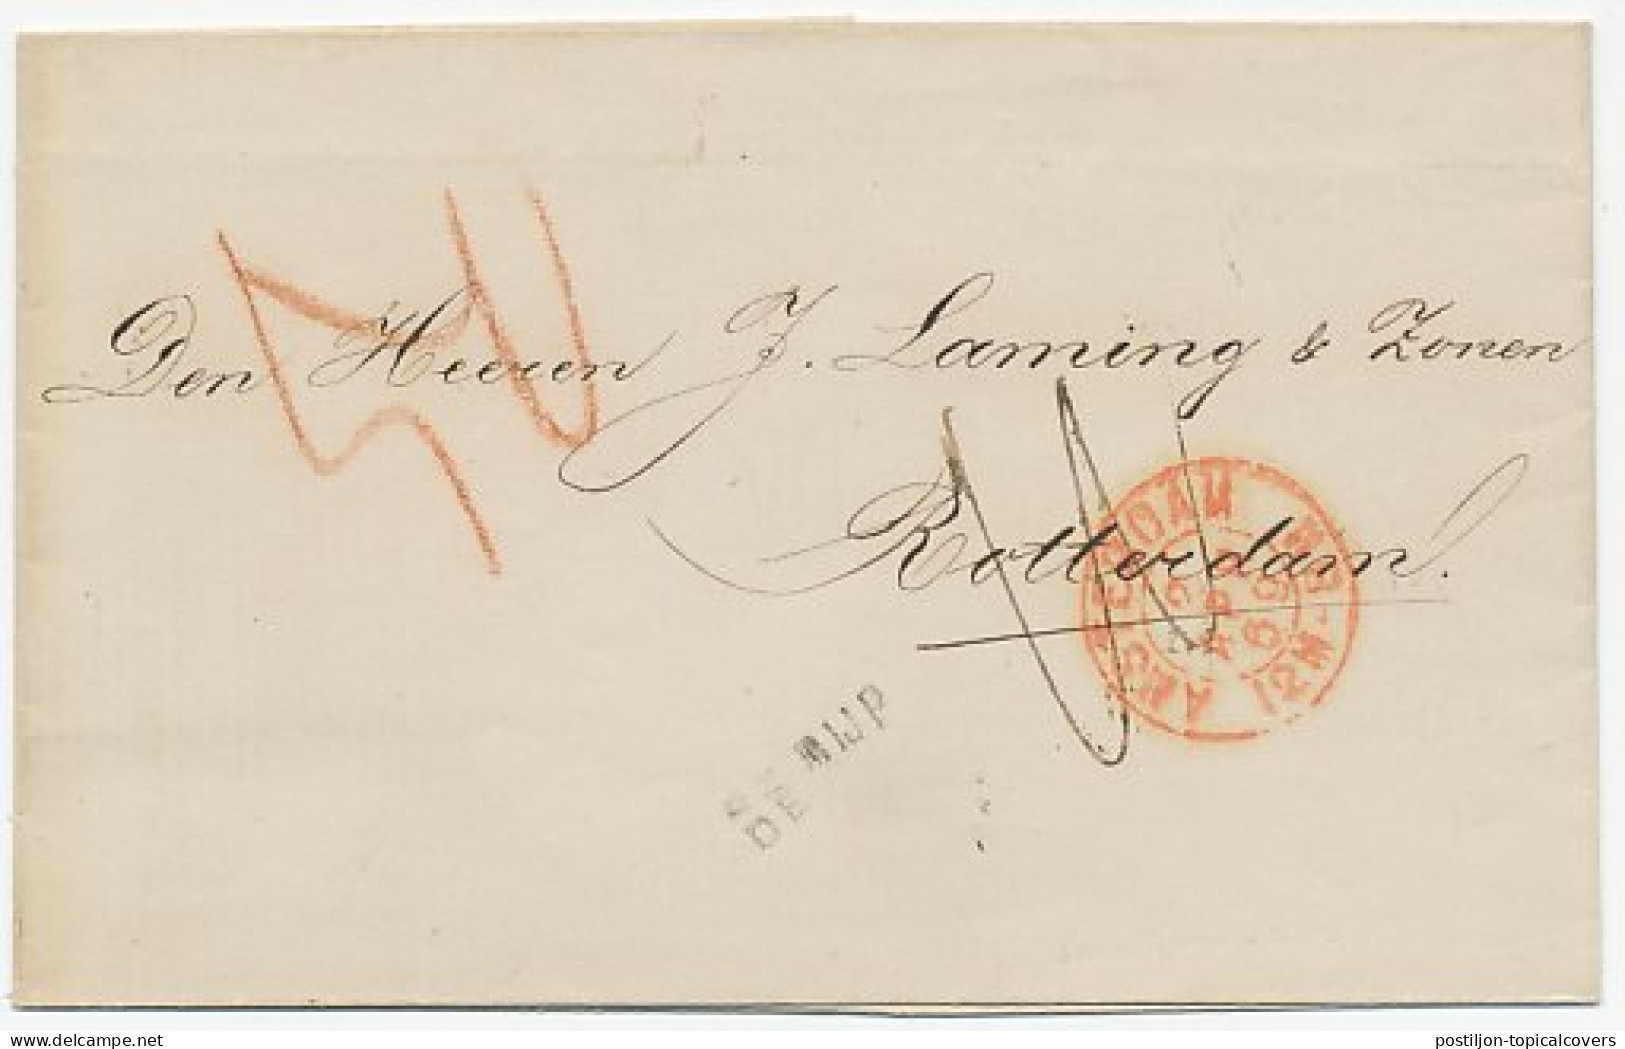 Naamstempel De Rijp 1864 - Briefe U. Dokumente